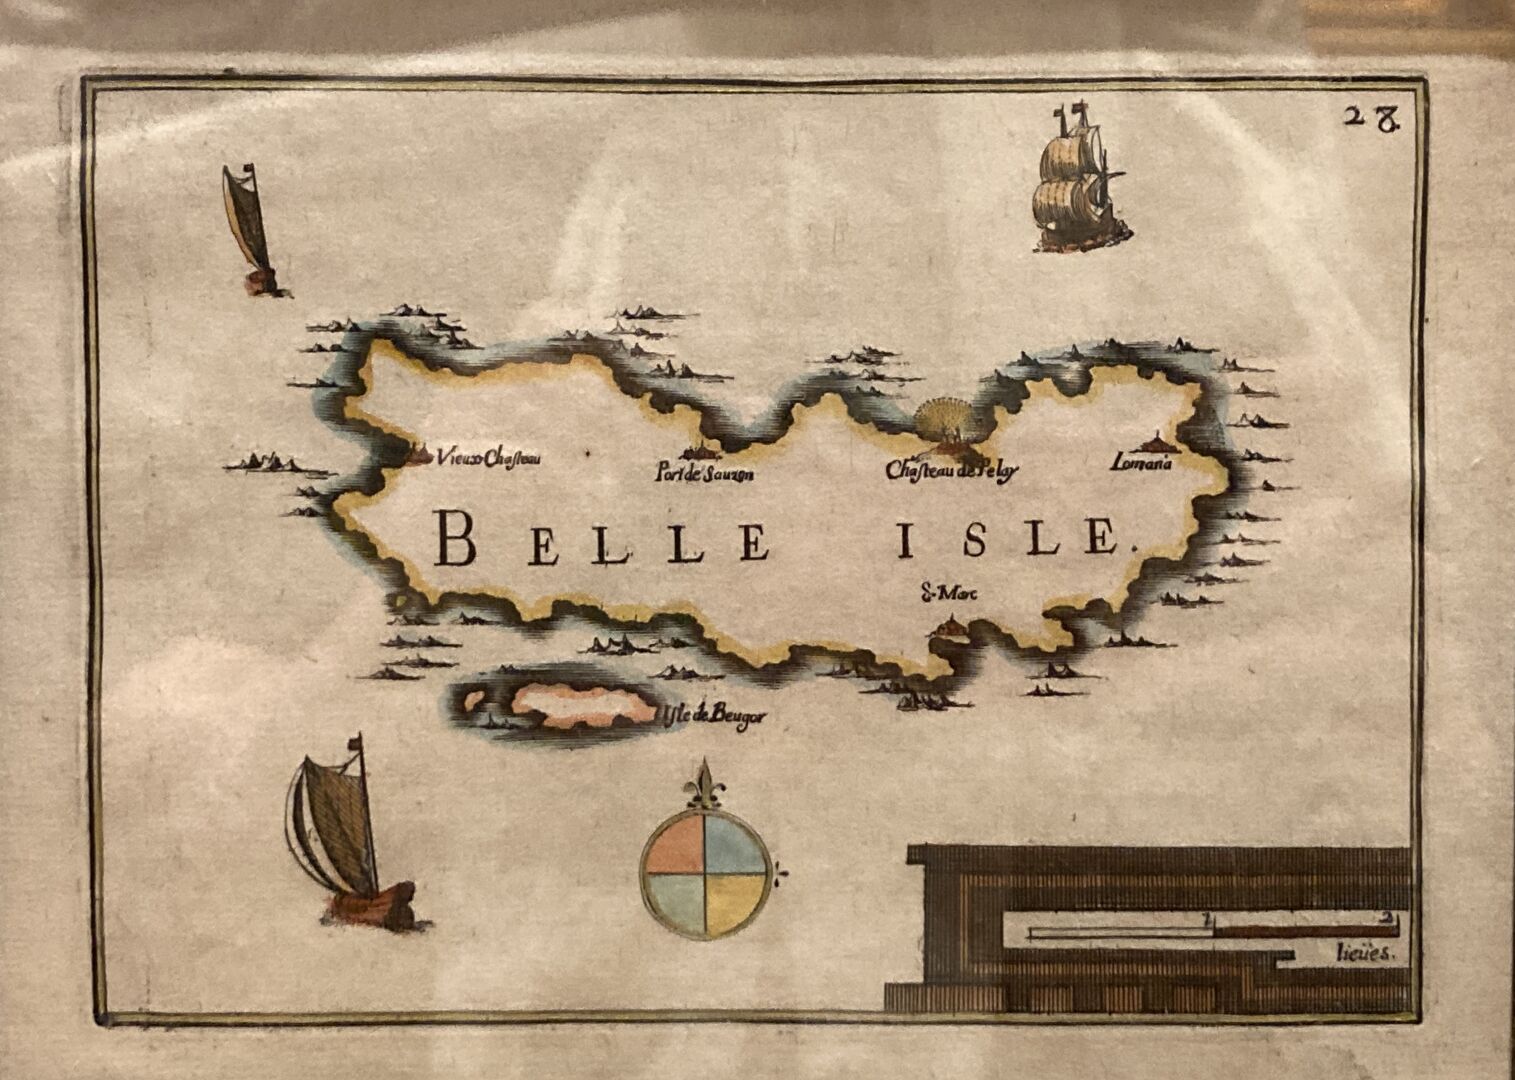 Null Gravure colorée représentant "Belle-Île"
XVIIIème siècle (encadrée)